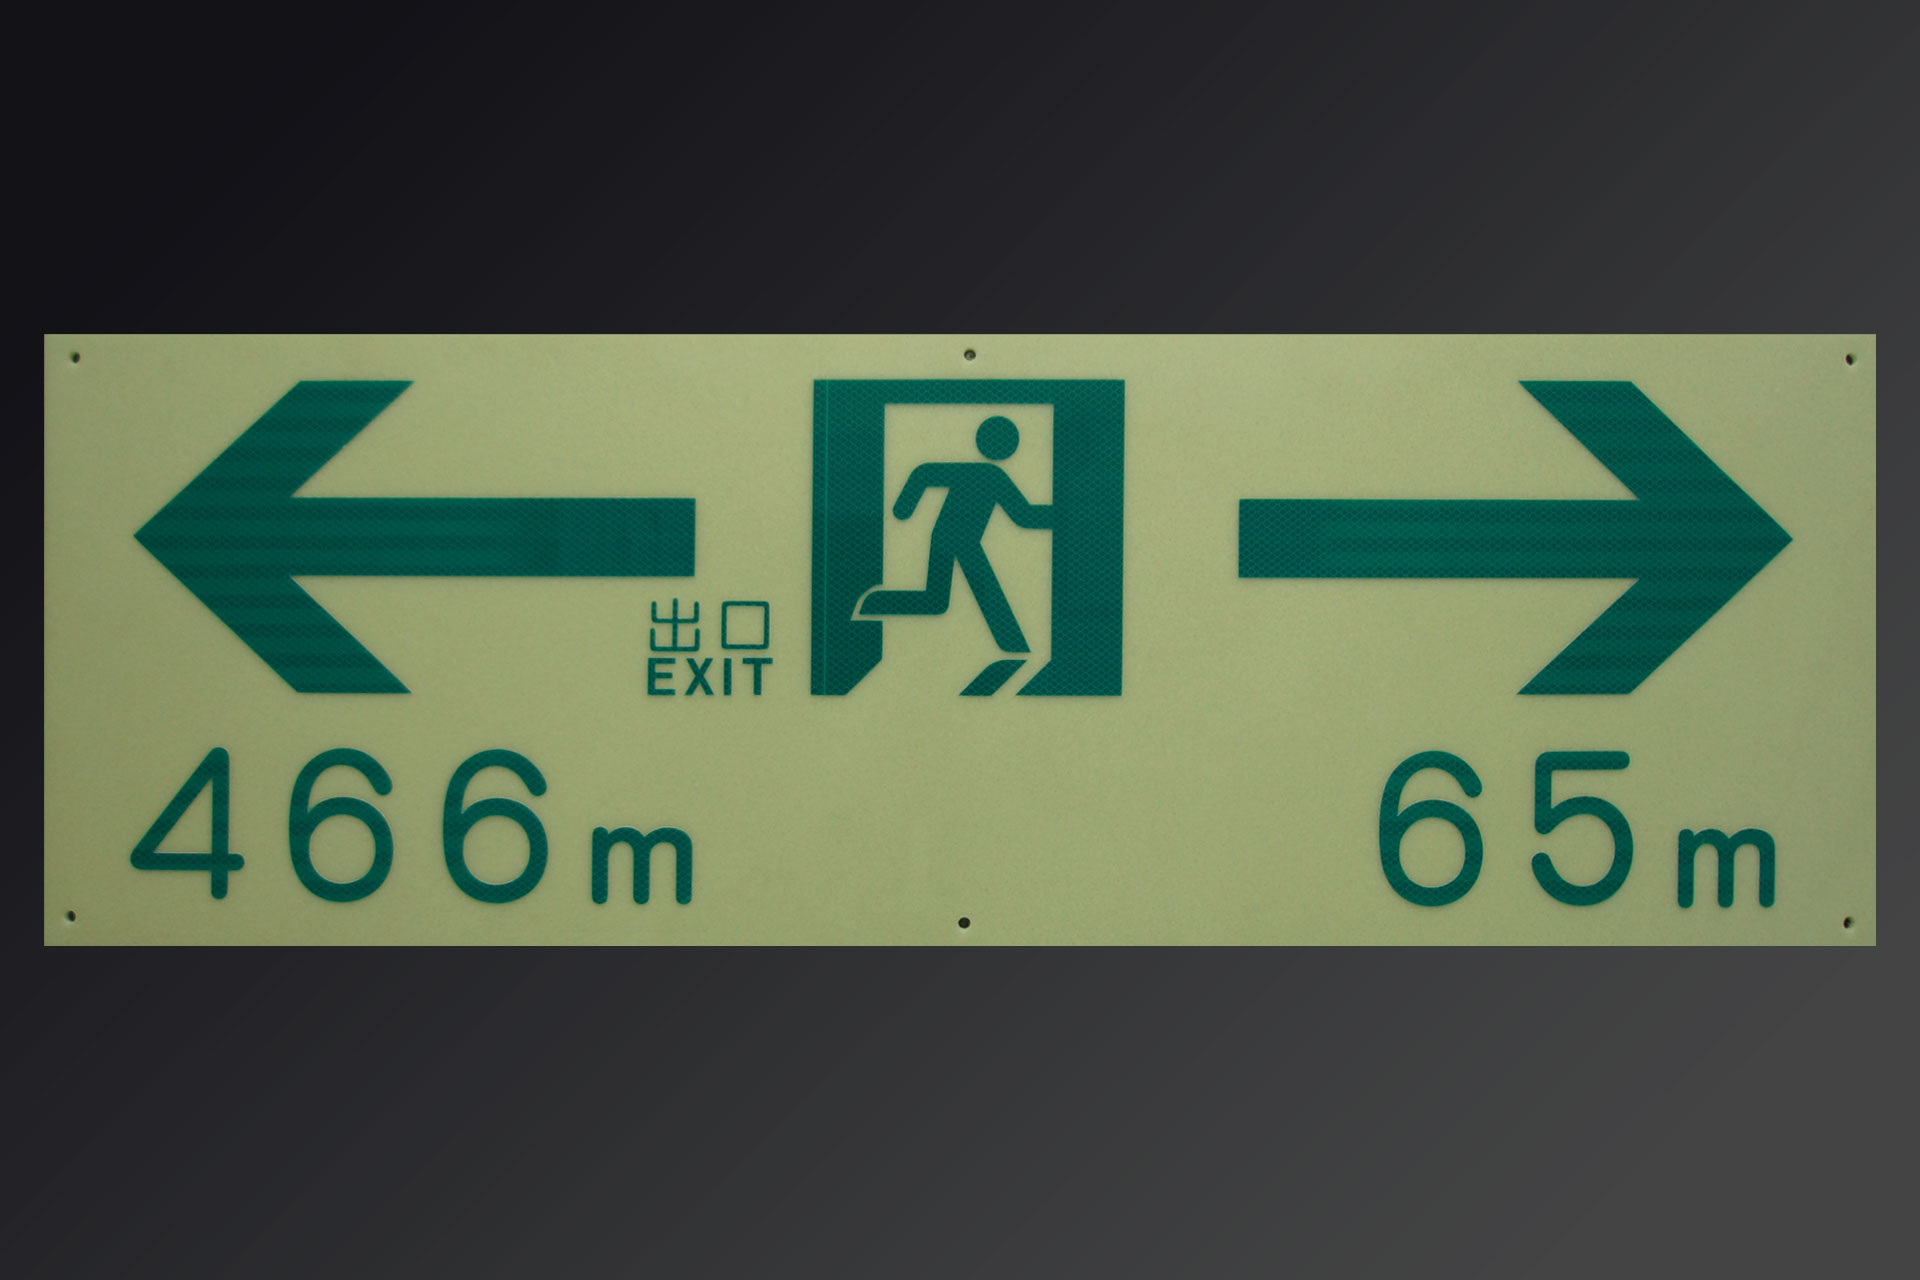 左の出口は466メートル、右の出口は65メートルと表示された明視下のハイブリッドストーン アベイラス リフレクション